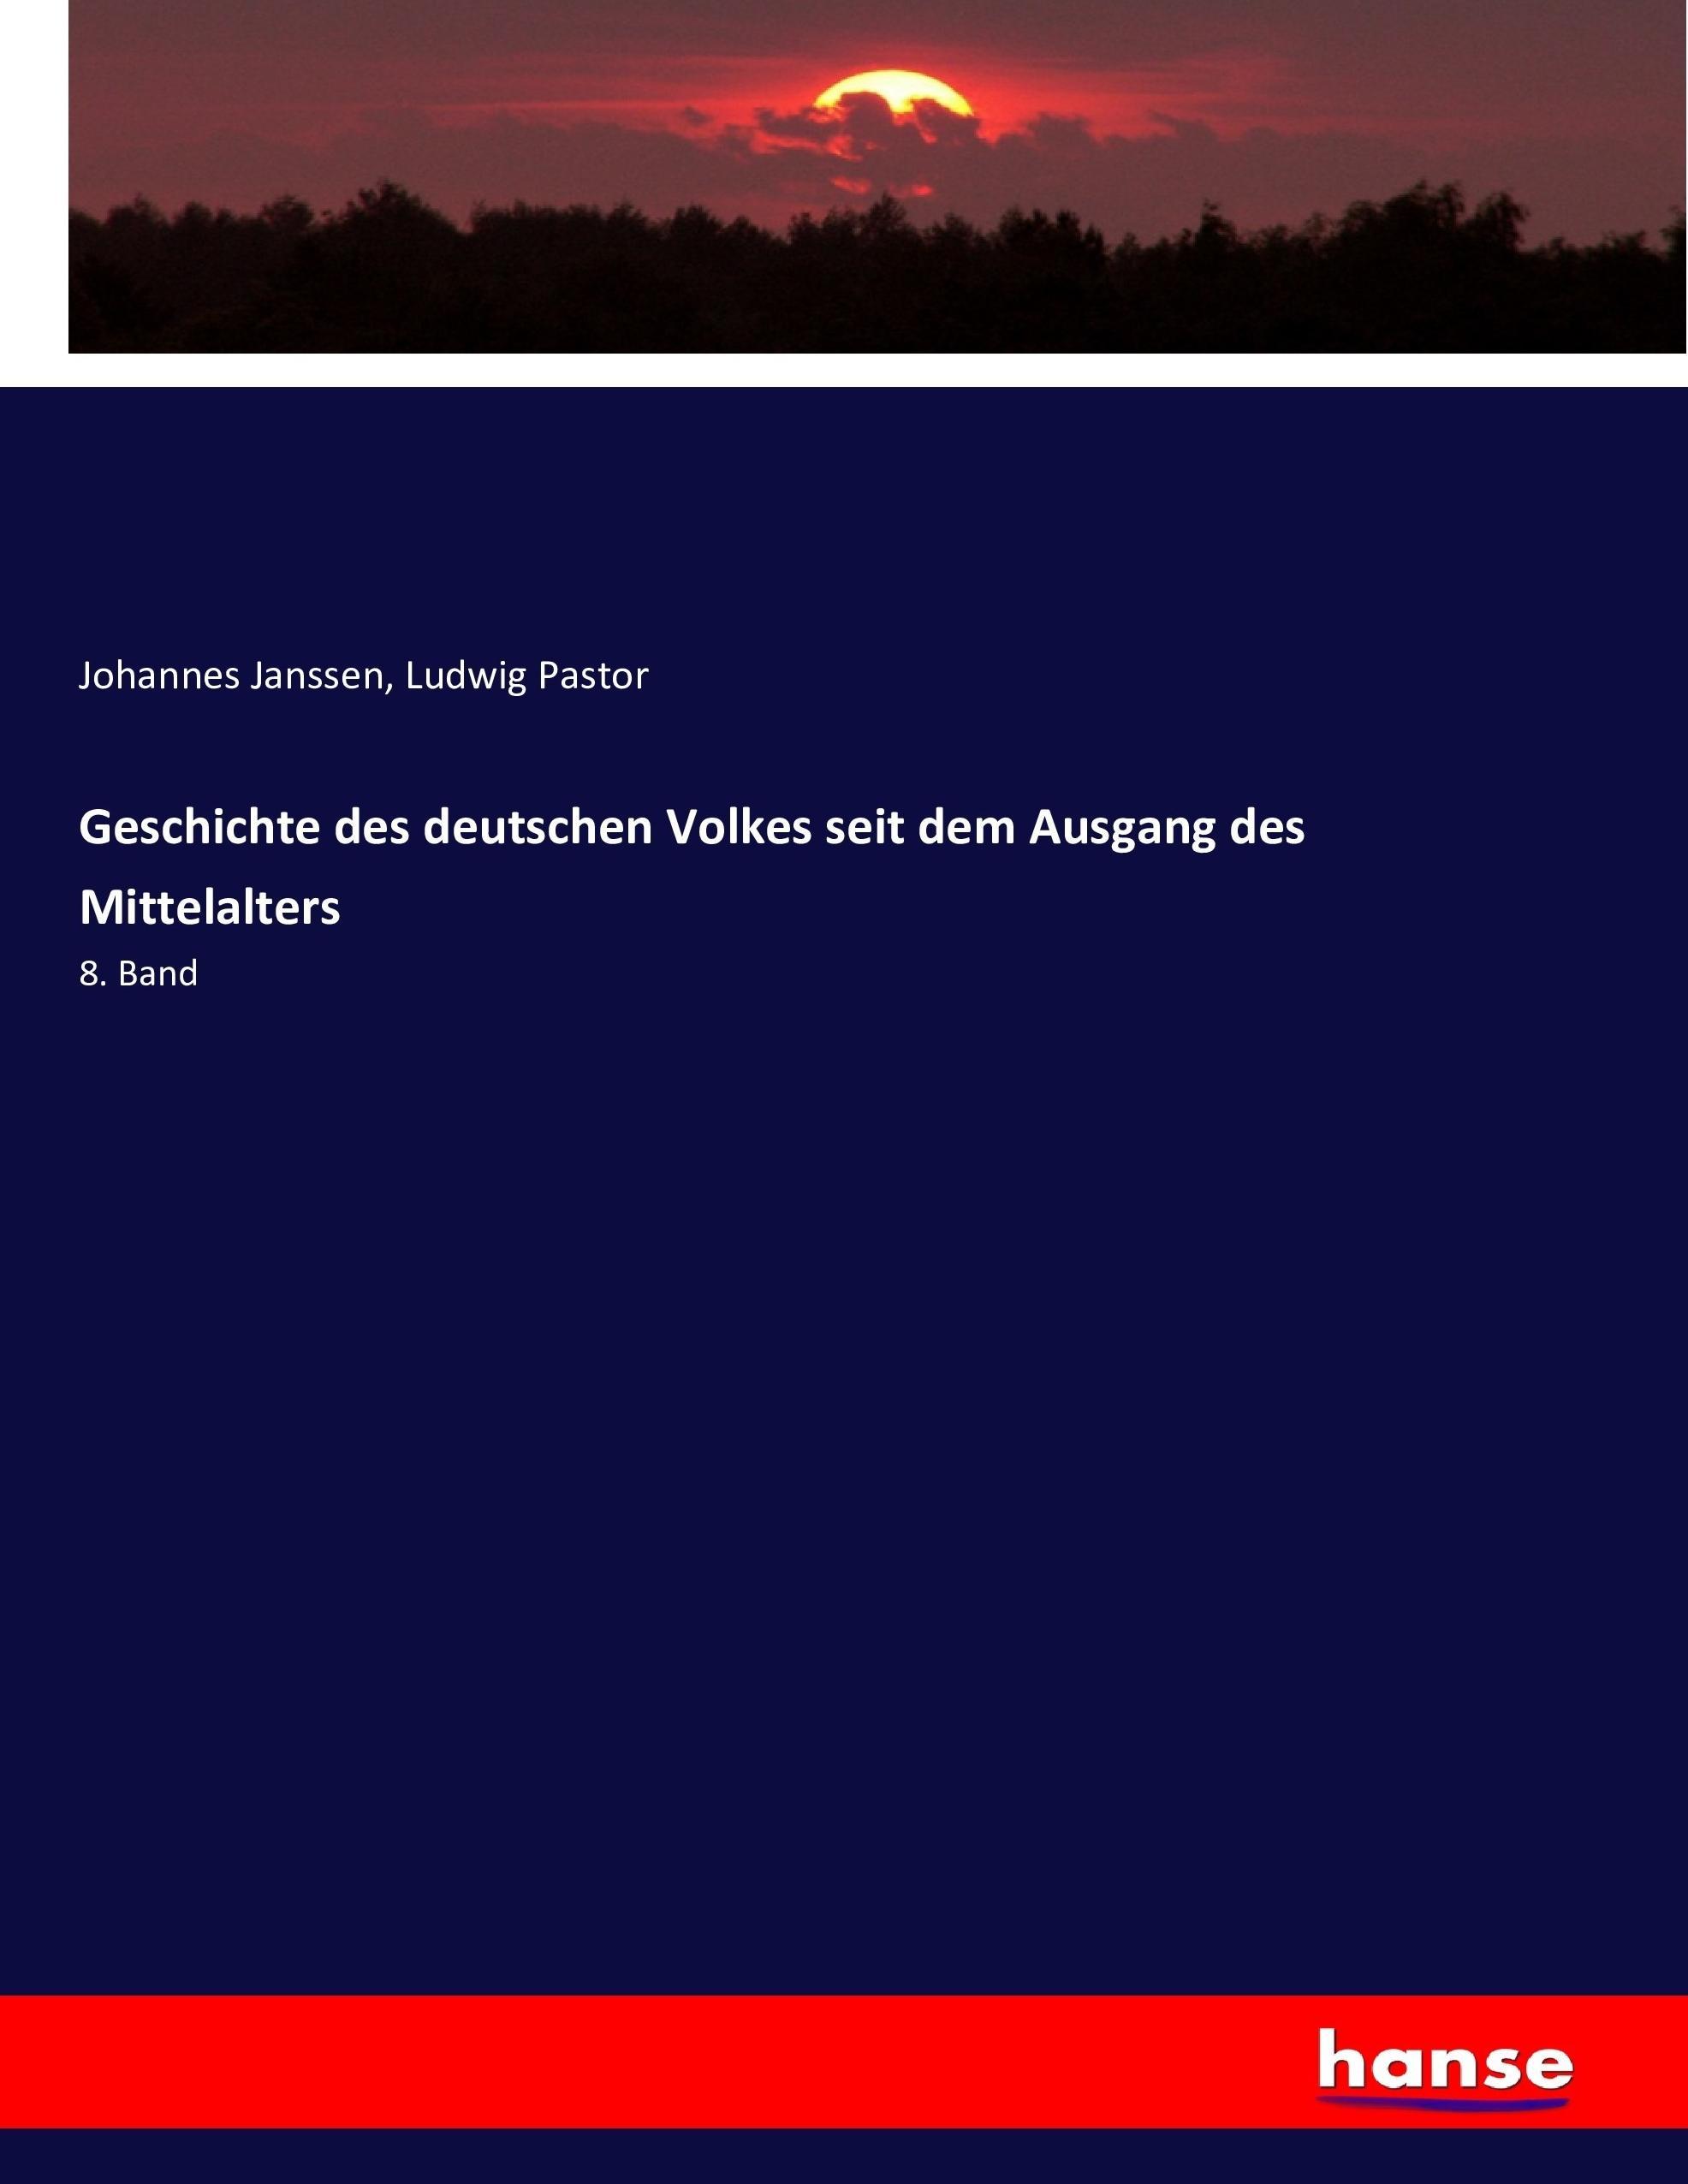 Geschichte des deutschen Volkes seit dem Ausgang des Mittelalters - Janssen, Johannes Pastor, Ludwig